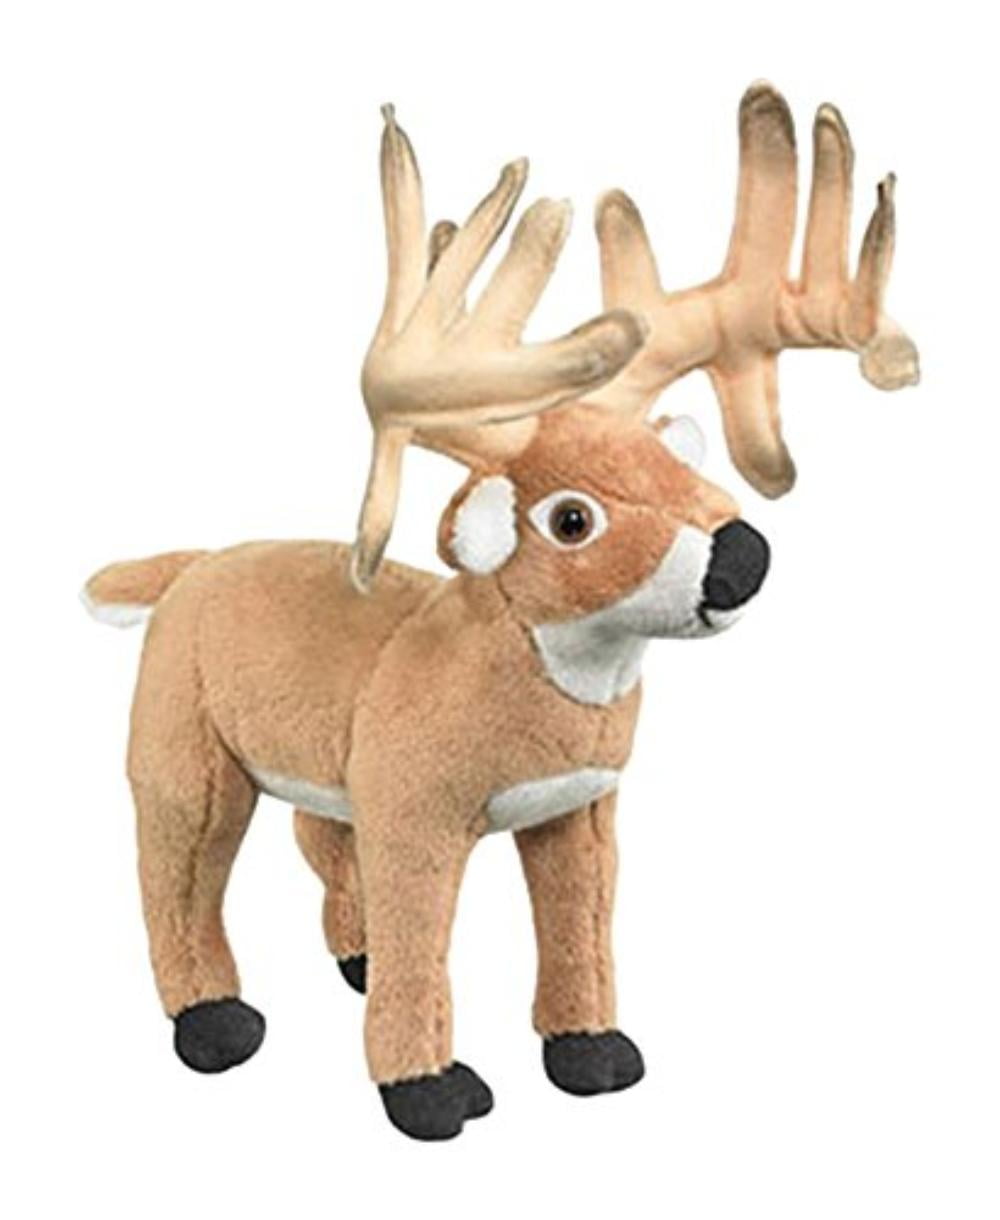 deer stuffed animal walmart